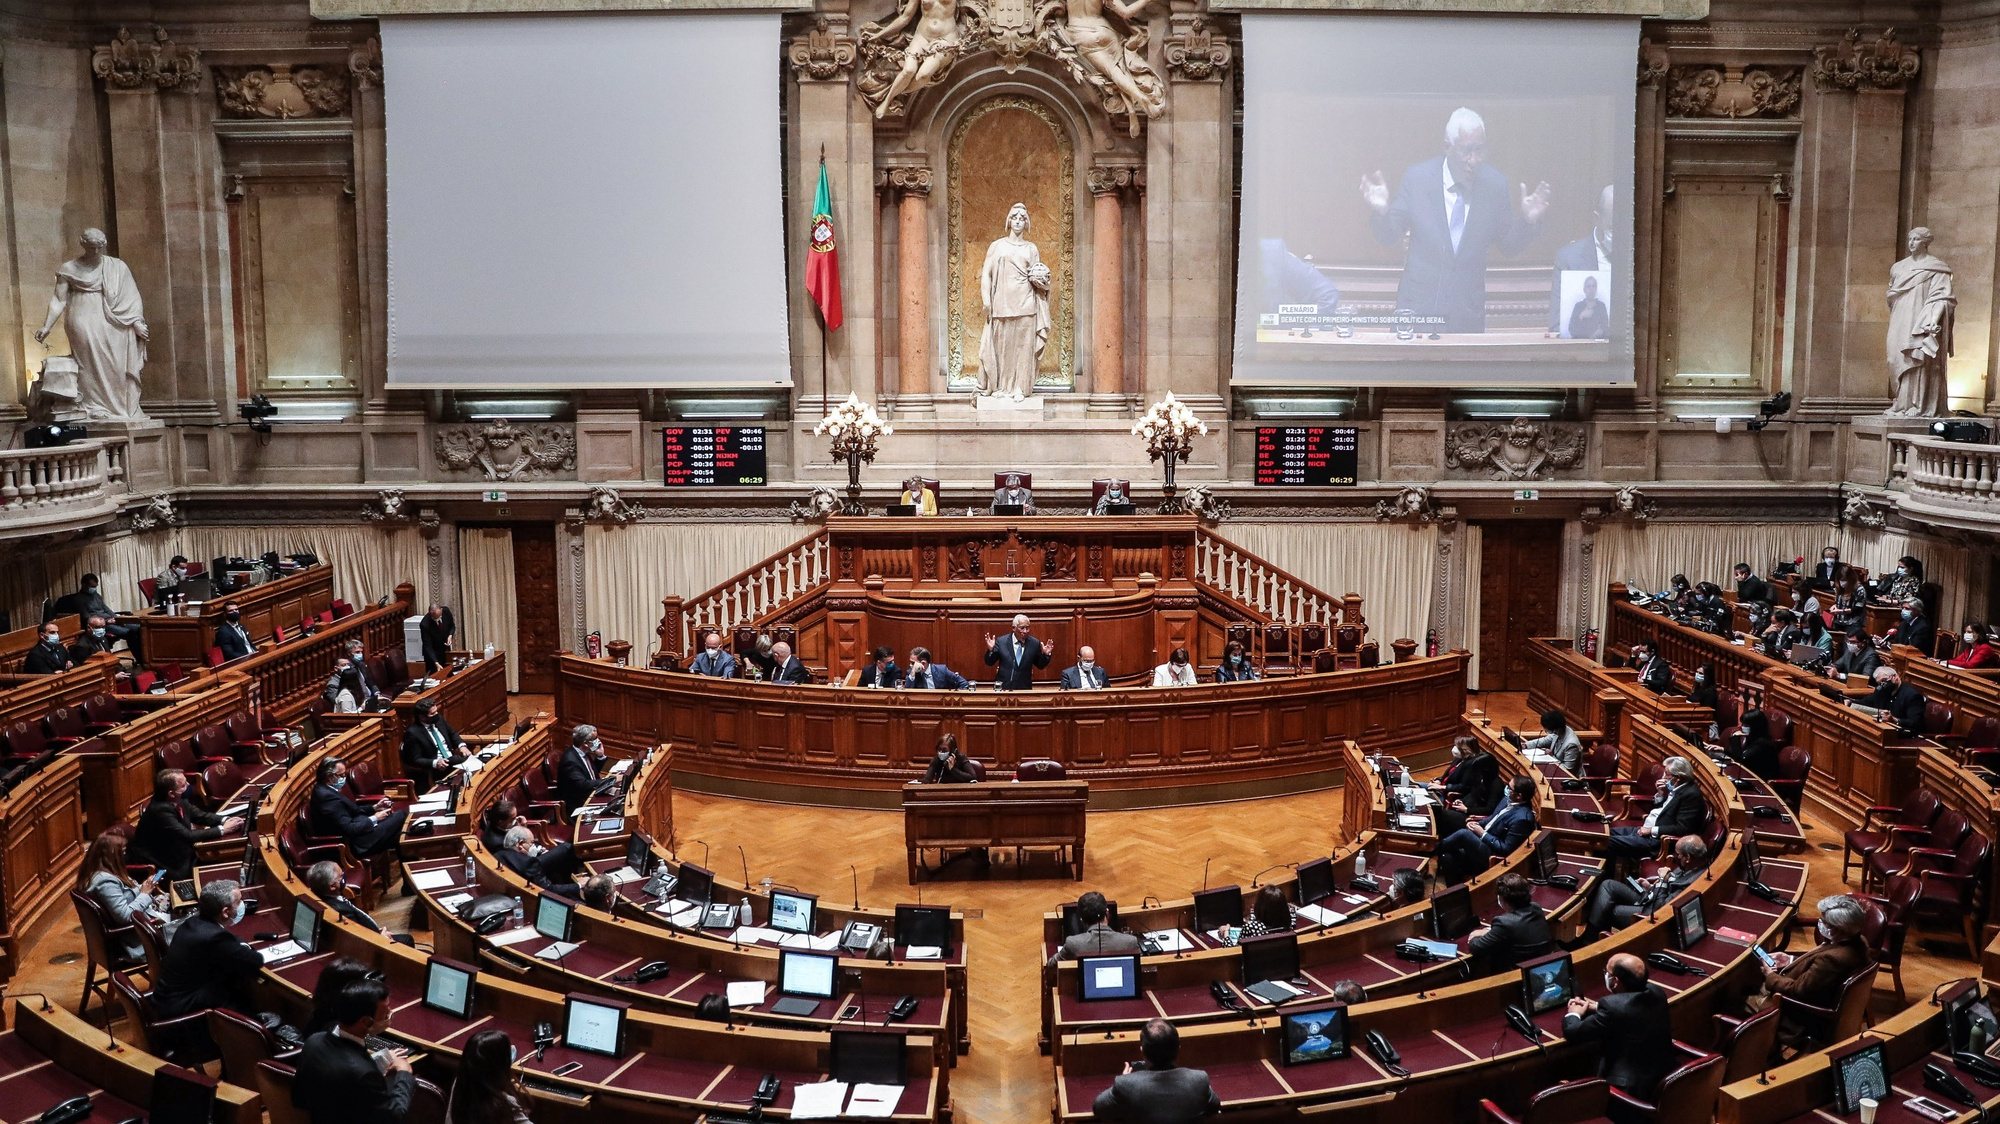 O primeiro-ministro, António Costa (C), participa no debate parlamentar sobre política geral, na Assembleia da República, em Lisboa, 17 de março de 2021. MÁRIO CRUZ/LUSA